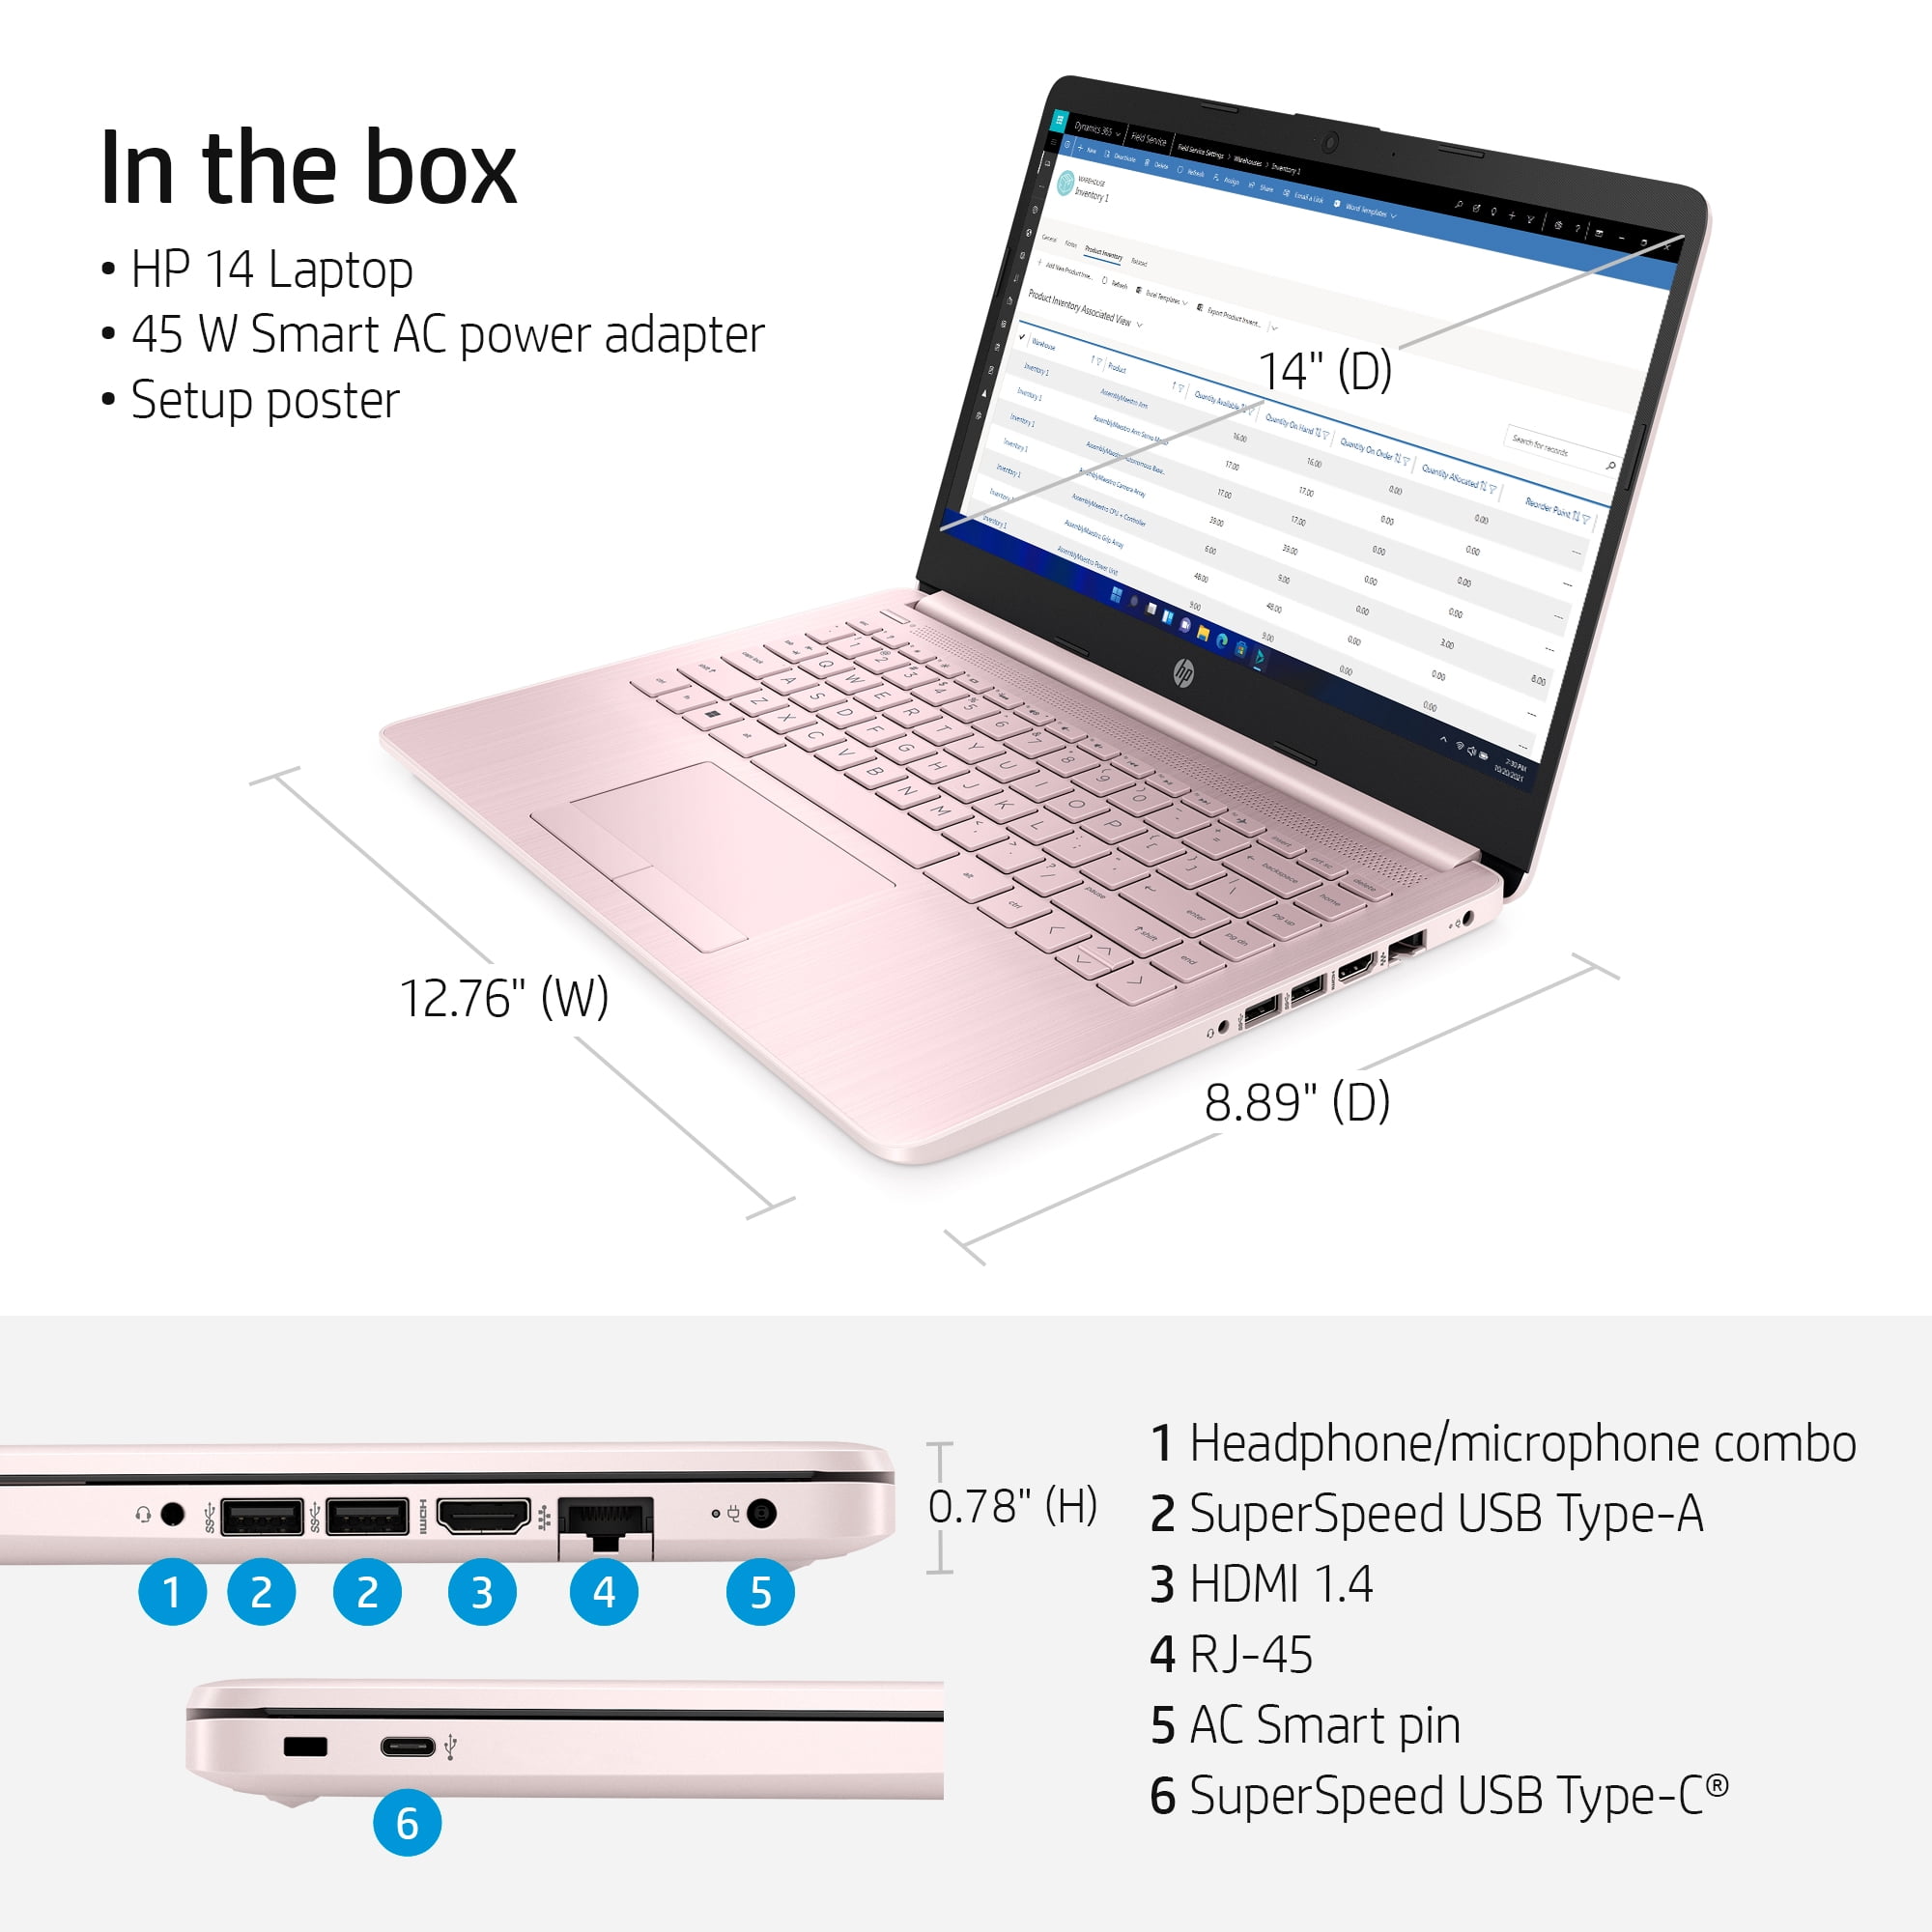 HP Stream 14", Intel Celeron N4020, 4GB RAM, 64GB eMMC, Pink, Windows 11 (S mode) with Office 365 1-yr, 14-cf2112wm